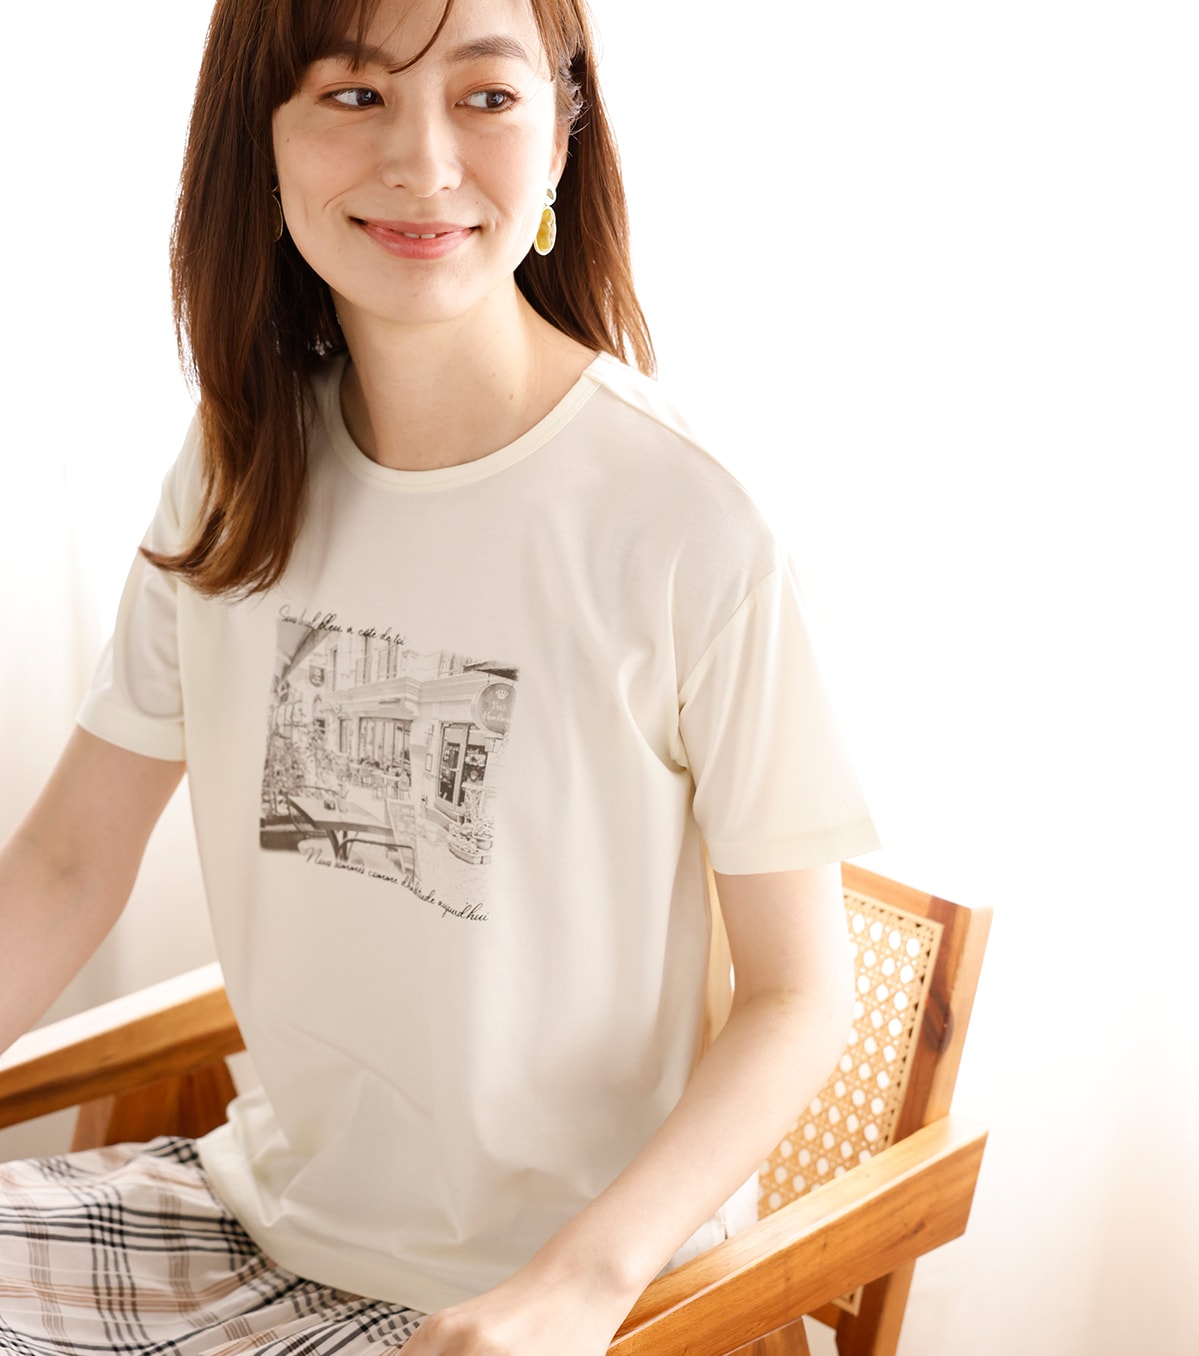 ひや楽フォトプリントTシャツ・アイボリーを着用している女性の写真